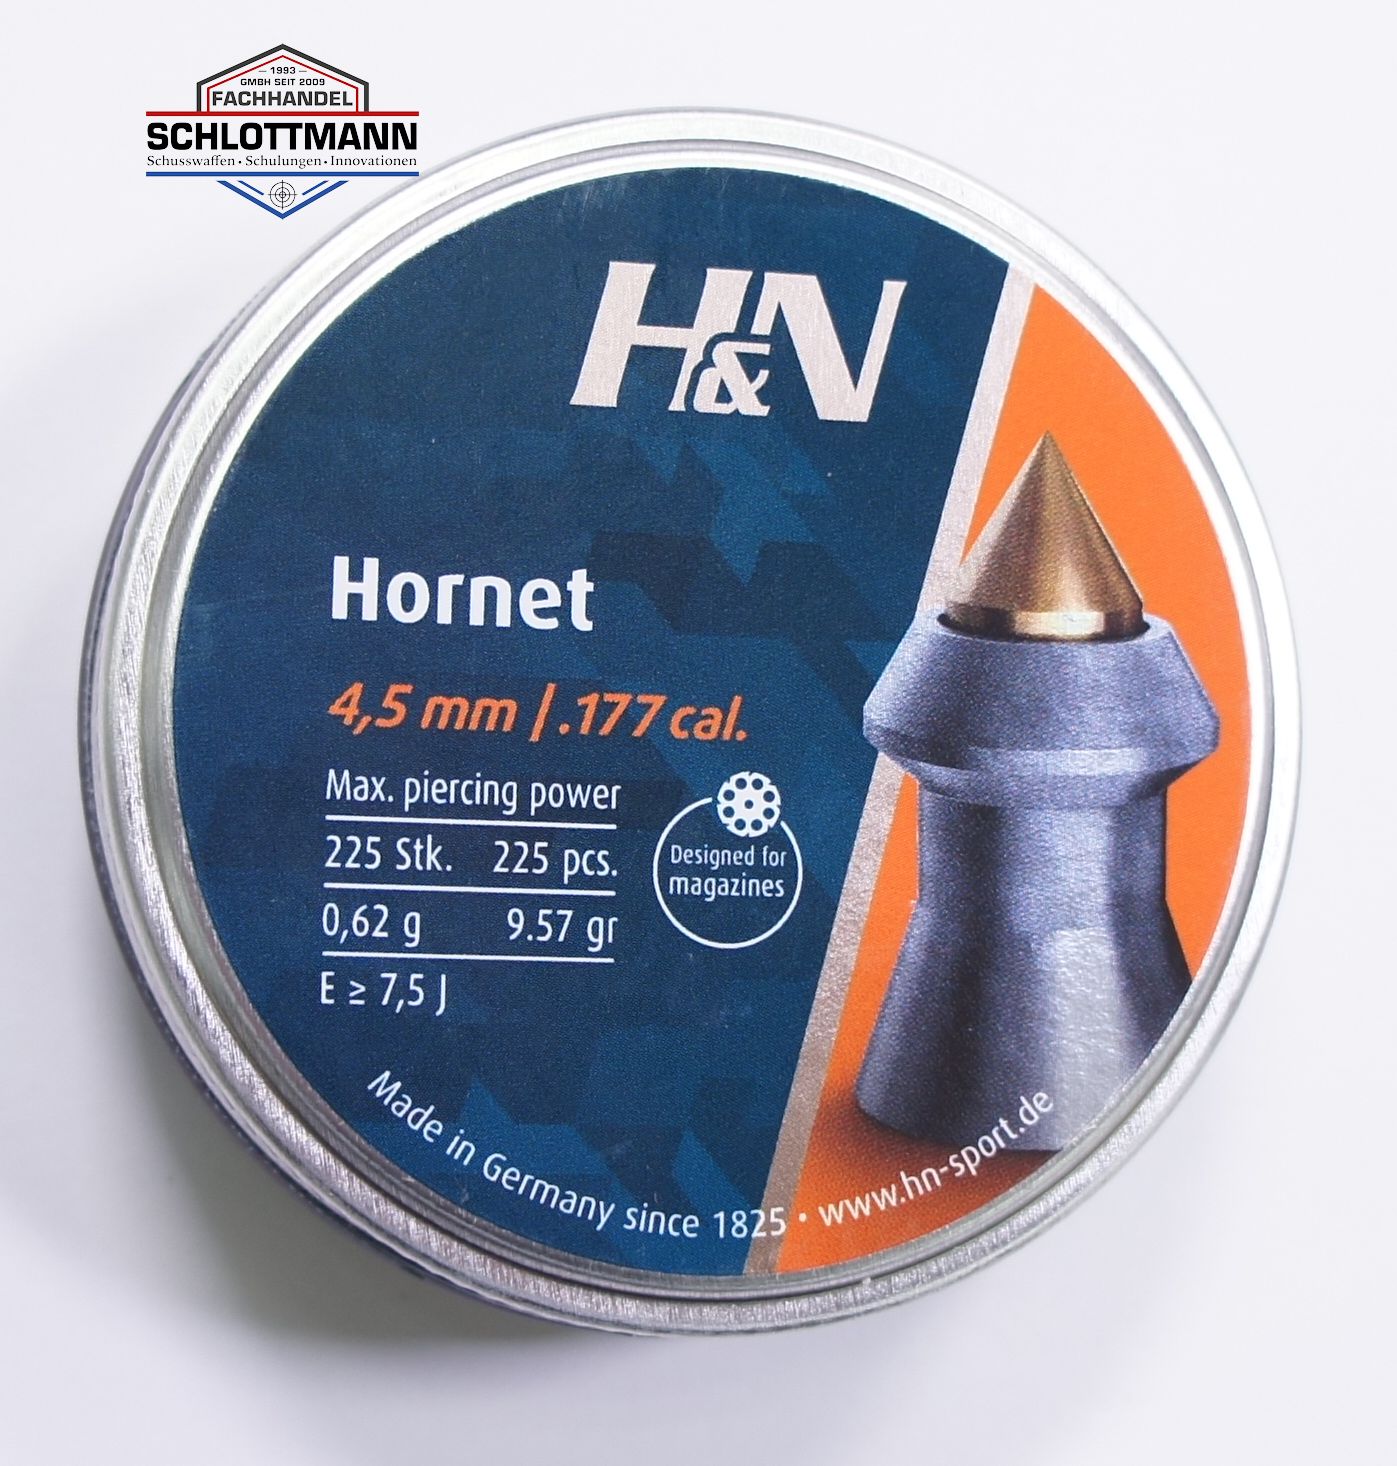 H&N Hornet, 4,5mm